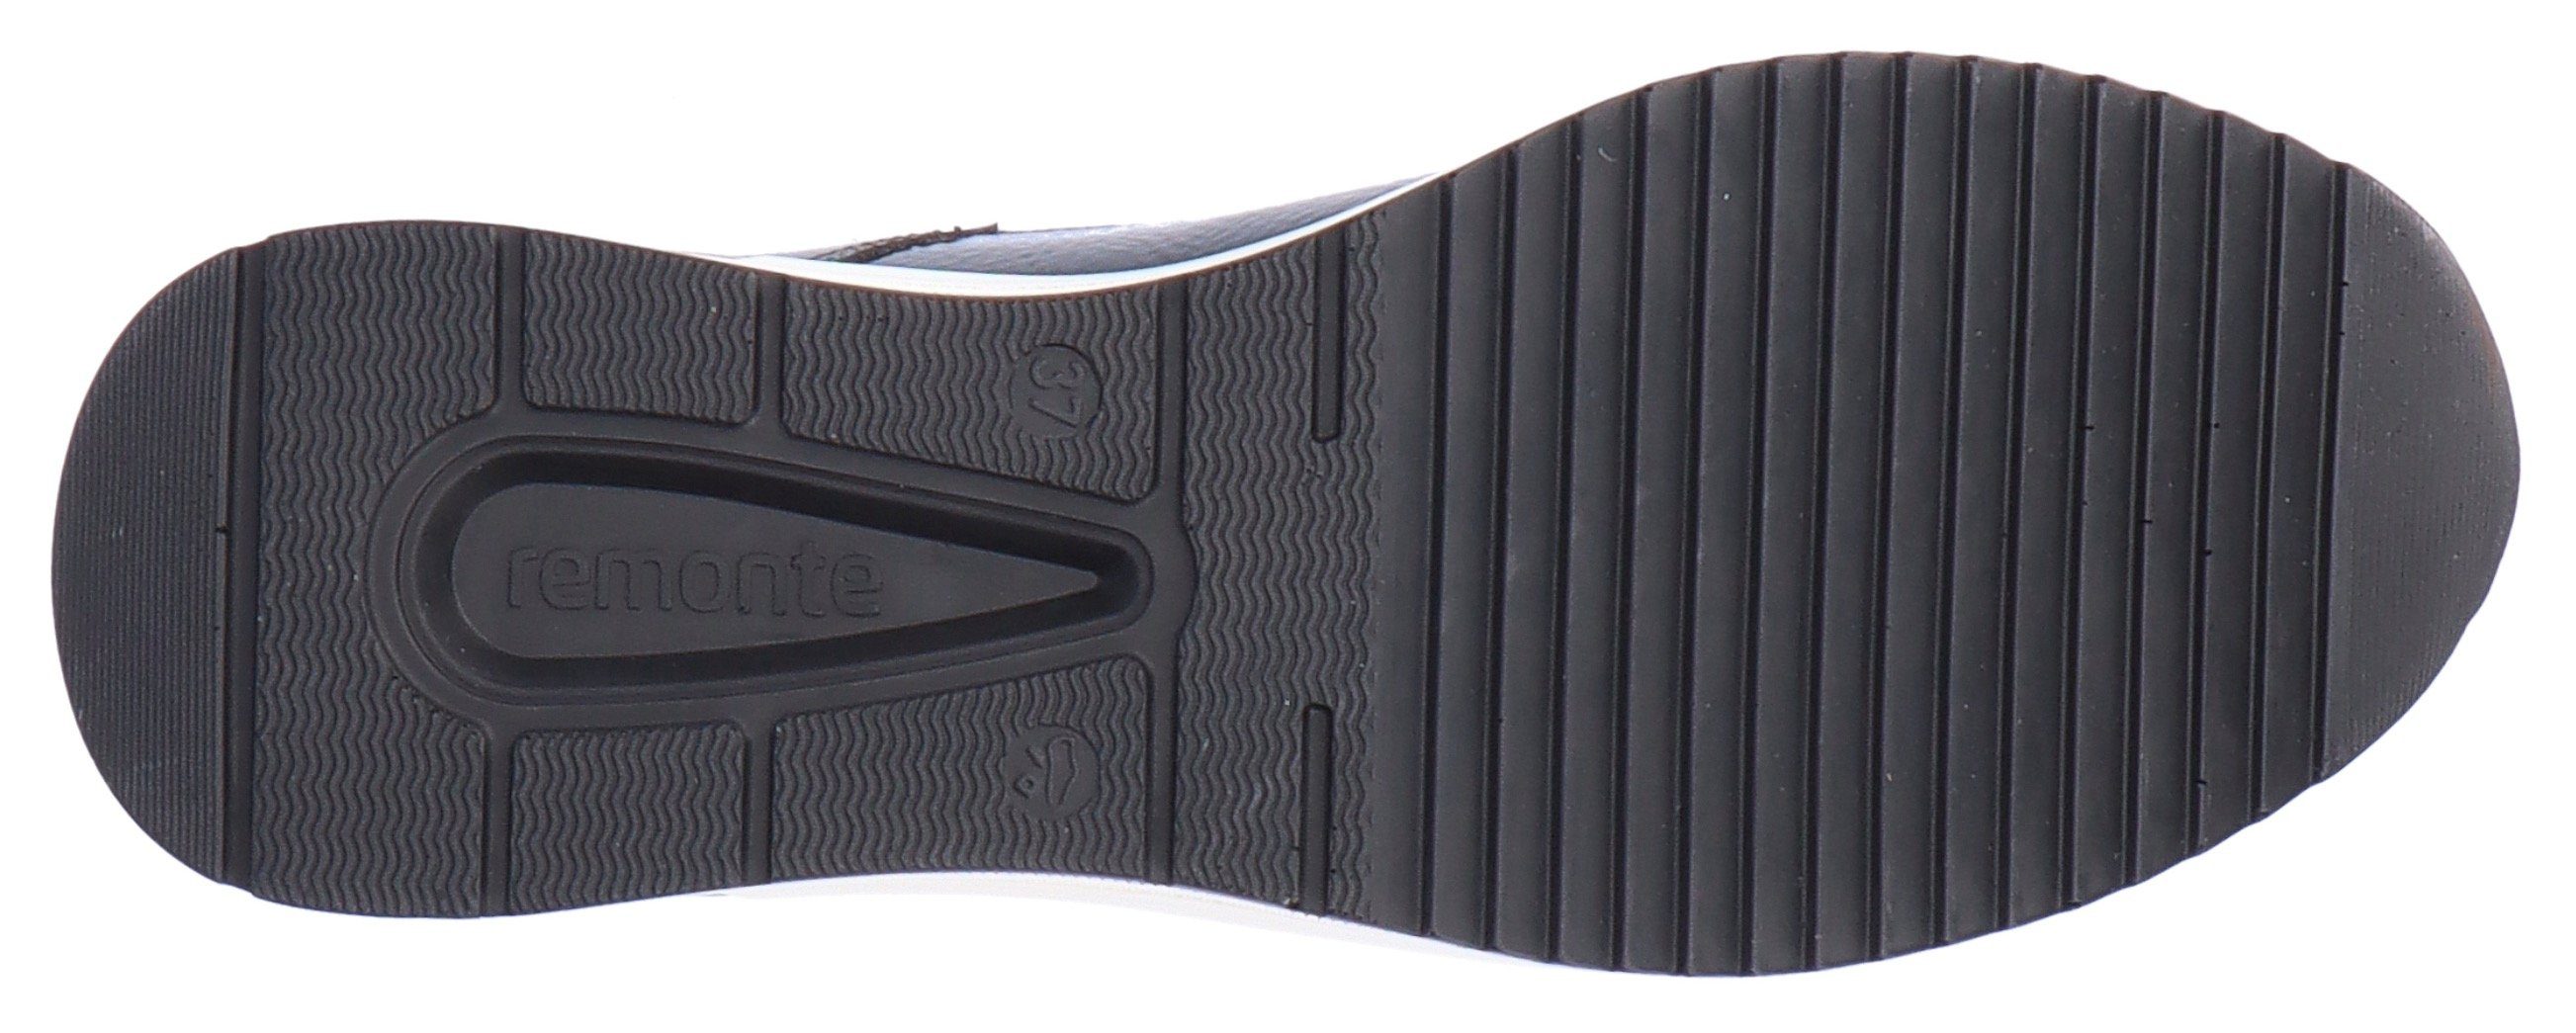 Remonte Keilsneaker mit Ausstattung hellbeige-schwarz Soft-Foam komfortabler